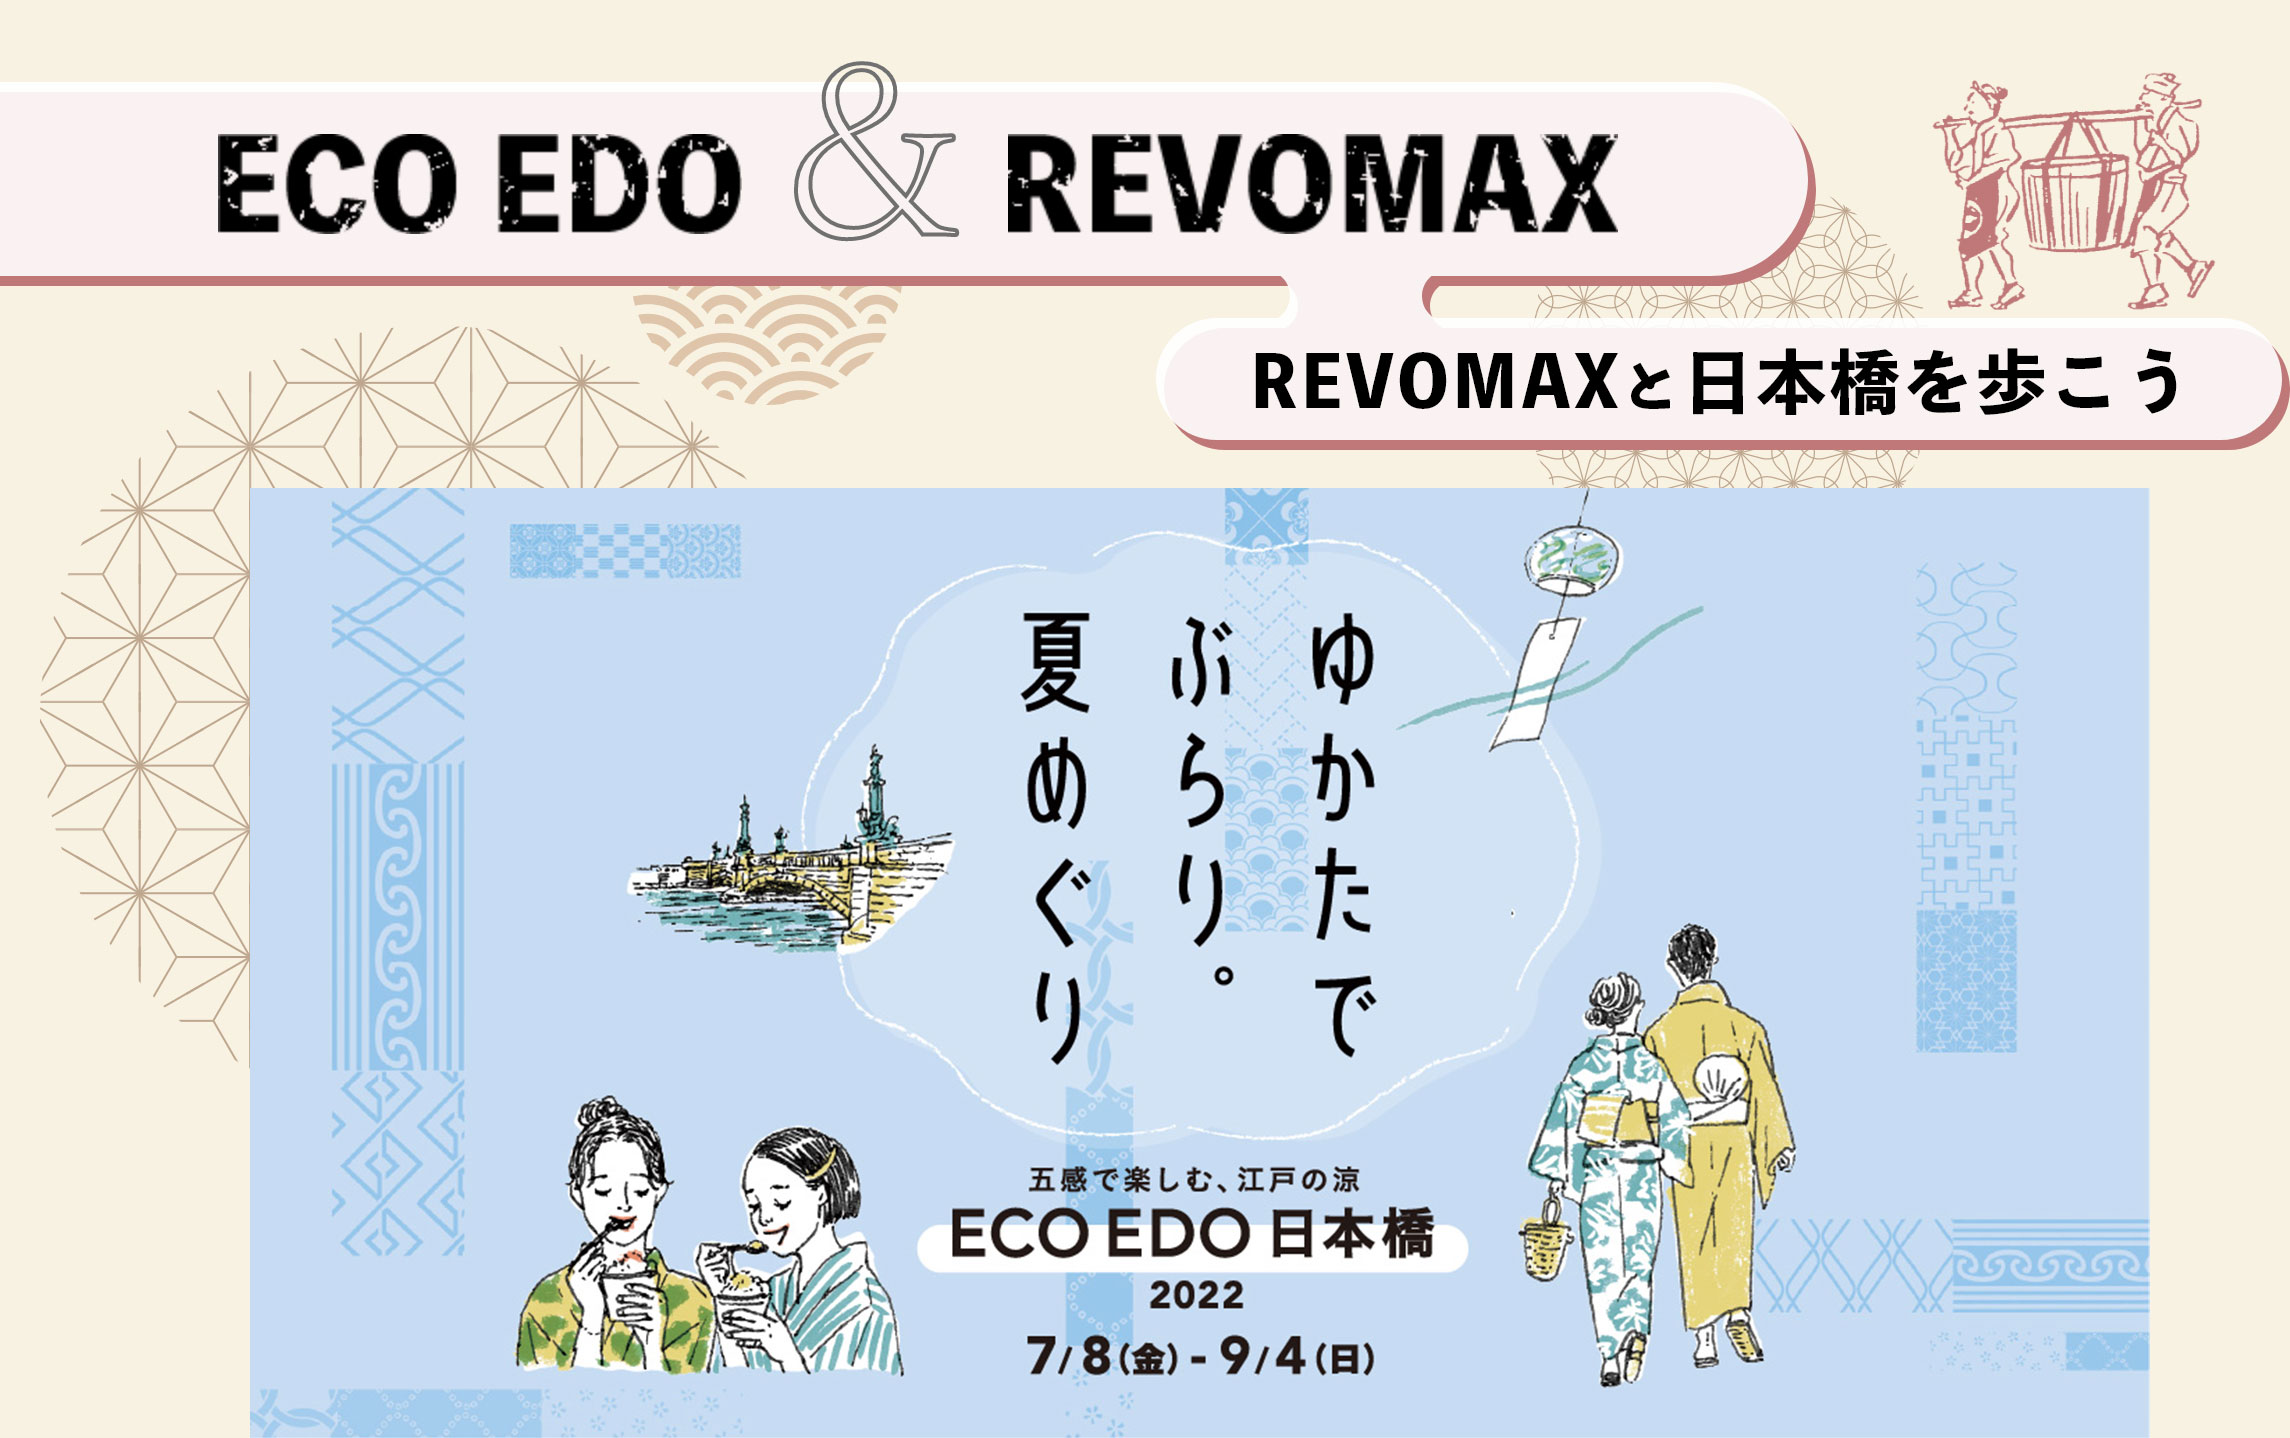 ECO EDO REVOMAX REVOMAXと日本橋を歩こう 五感で楽しむ、江戸の涼 ECO EDO日本橋2021 7/16（金）- 9/12（日）